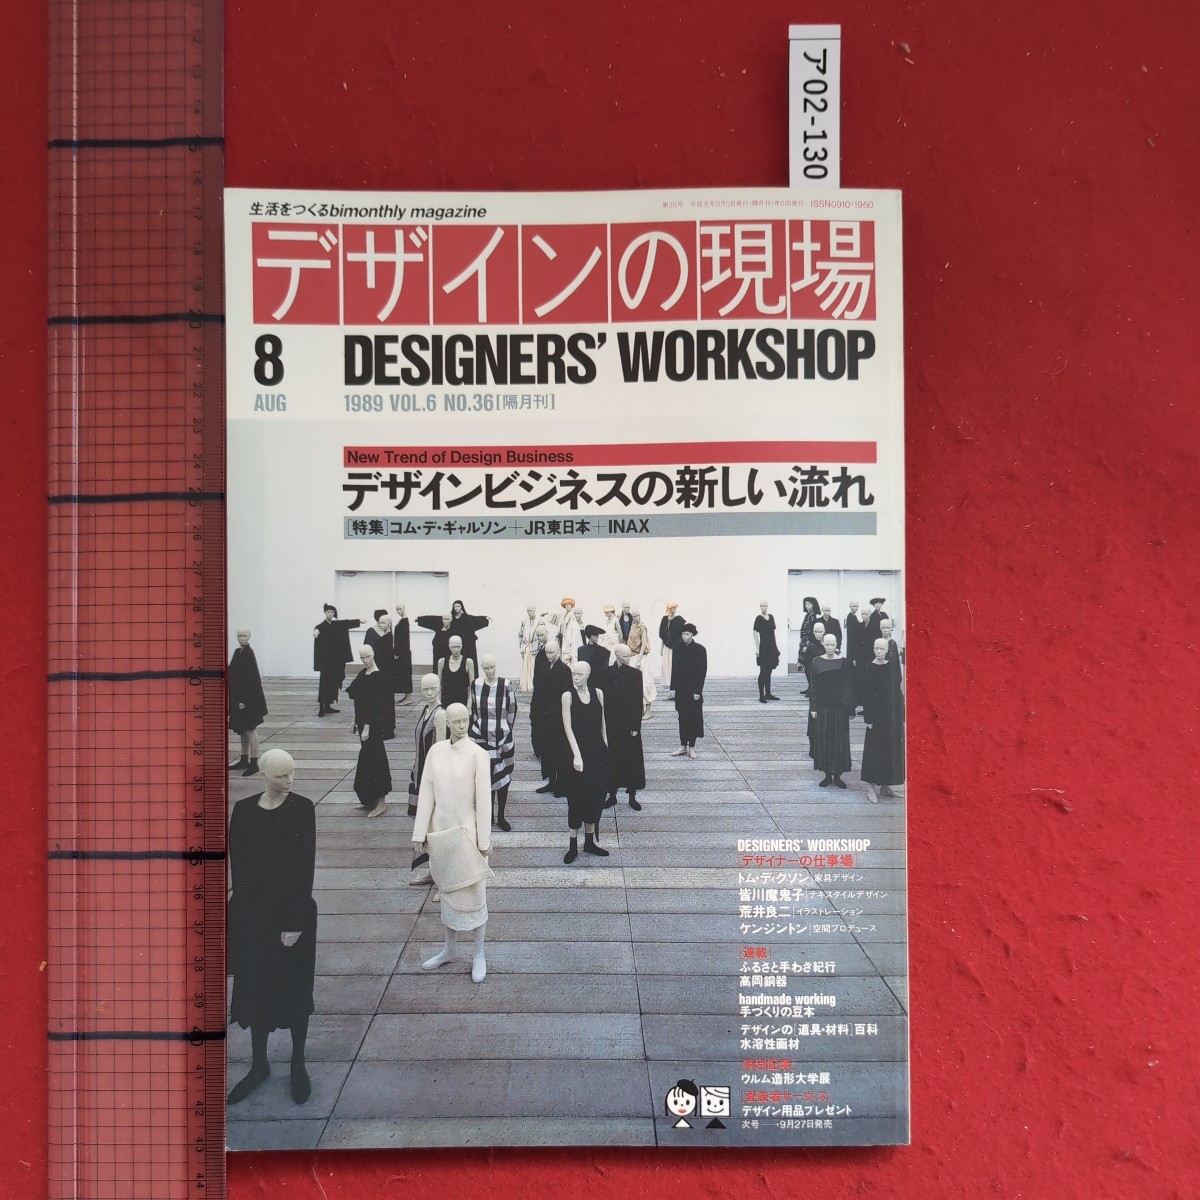 ア02-130生活をつくるbimonthly magazineデザインの現場 DESIGNERS' WORKSHOP1989年8月号 VOL.6 NO.36デザインビジネスの新しい流れ_画像1